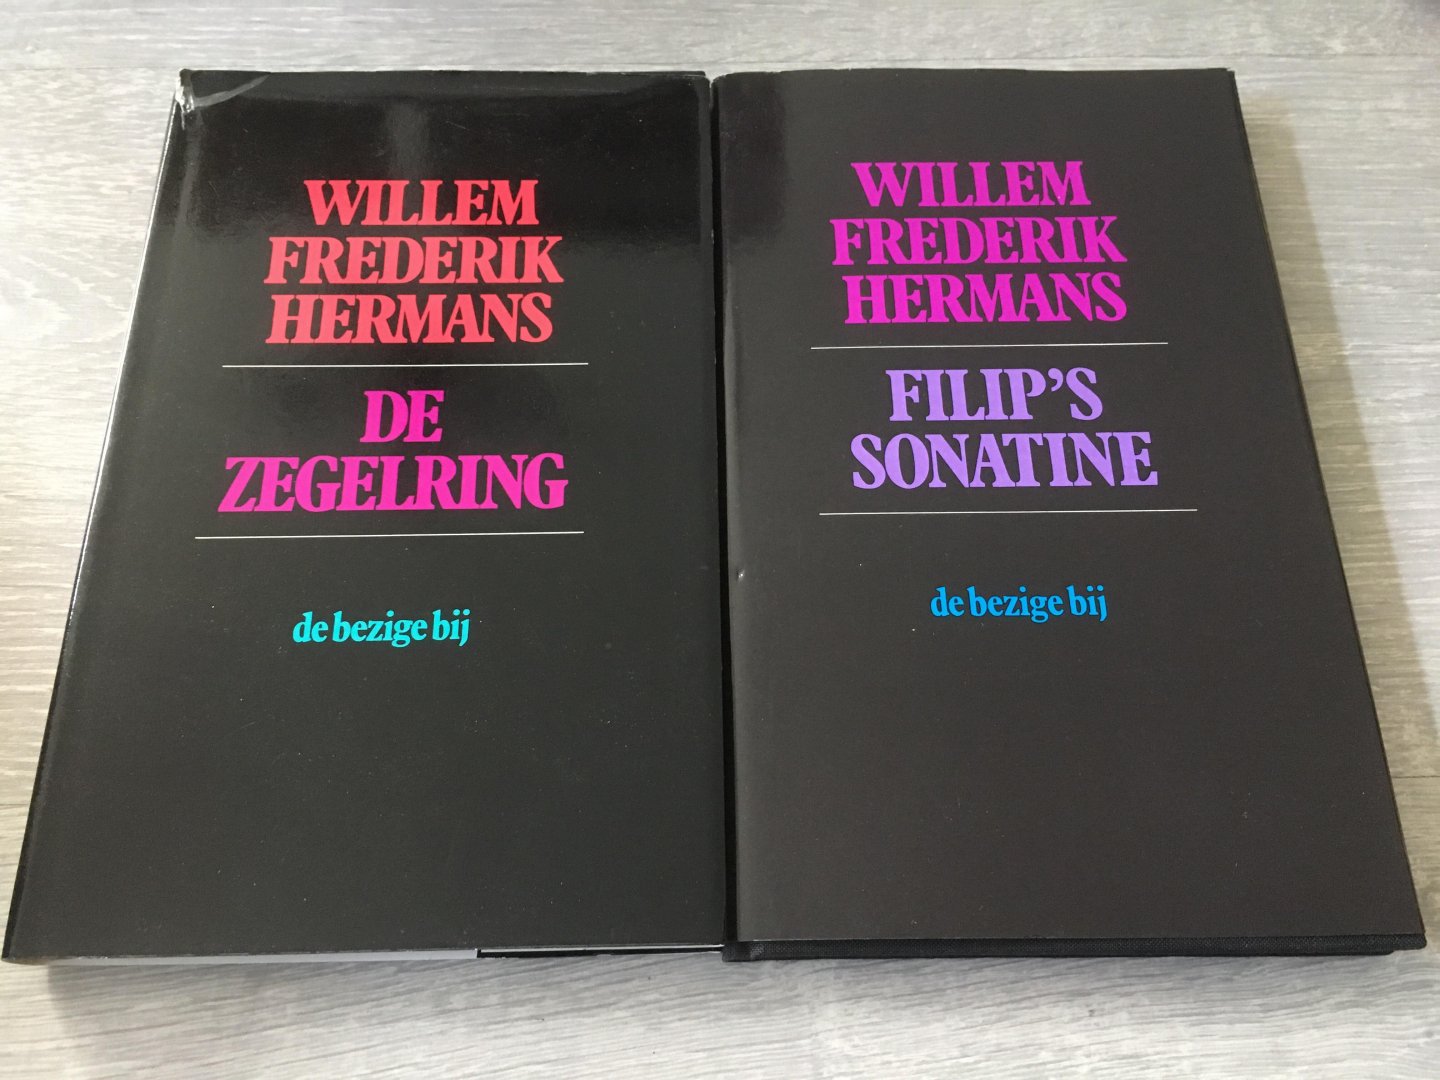 Hermans, Willem Frederik - Twee boeken van Willem Frederik Hermans; Filip’s Sonatine & De zegelring